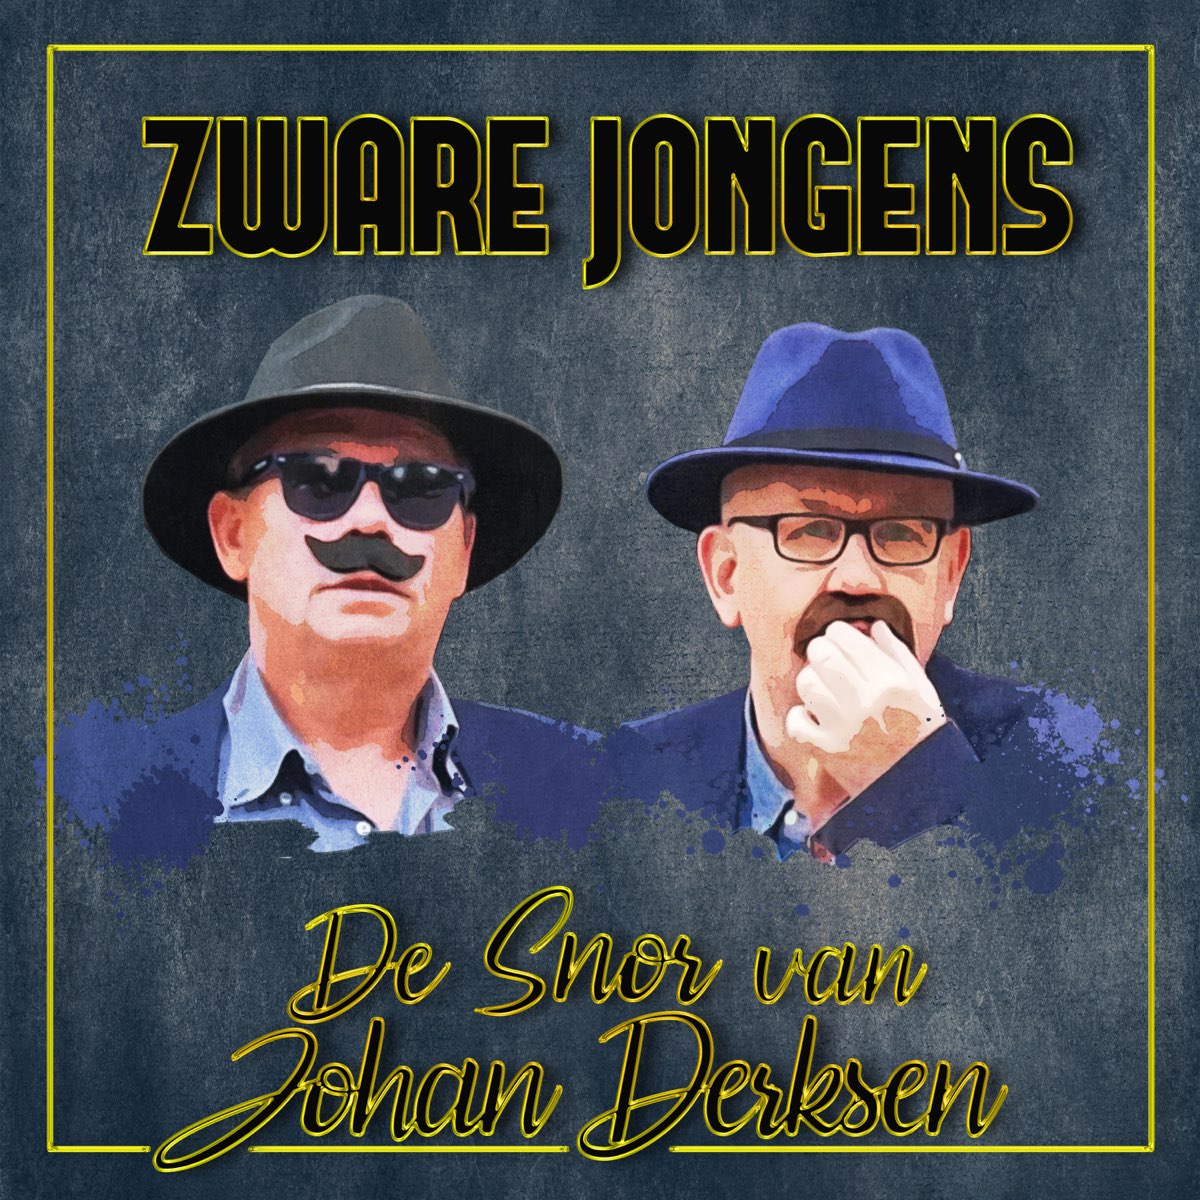 De Snor Van Johan Derksen - Single by Zware Jongens on Apple Music